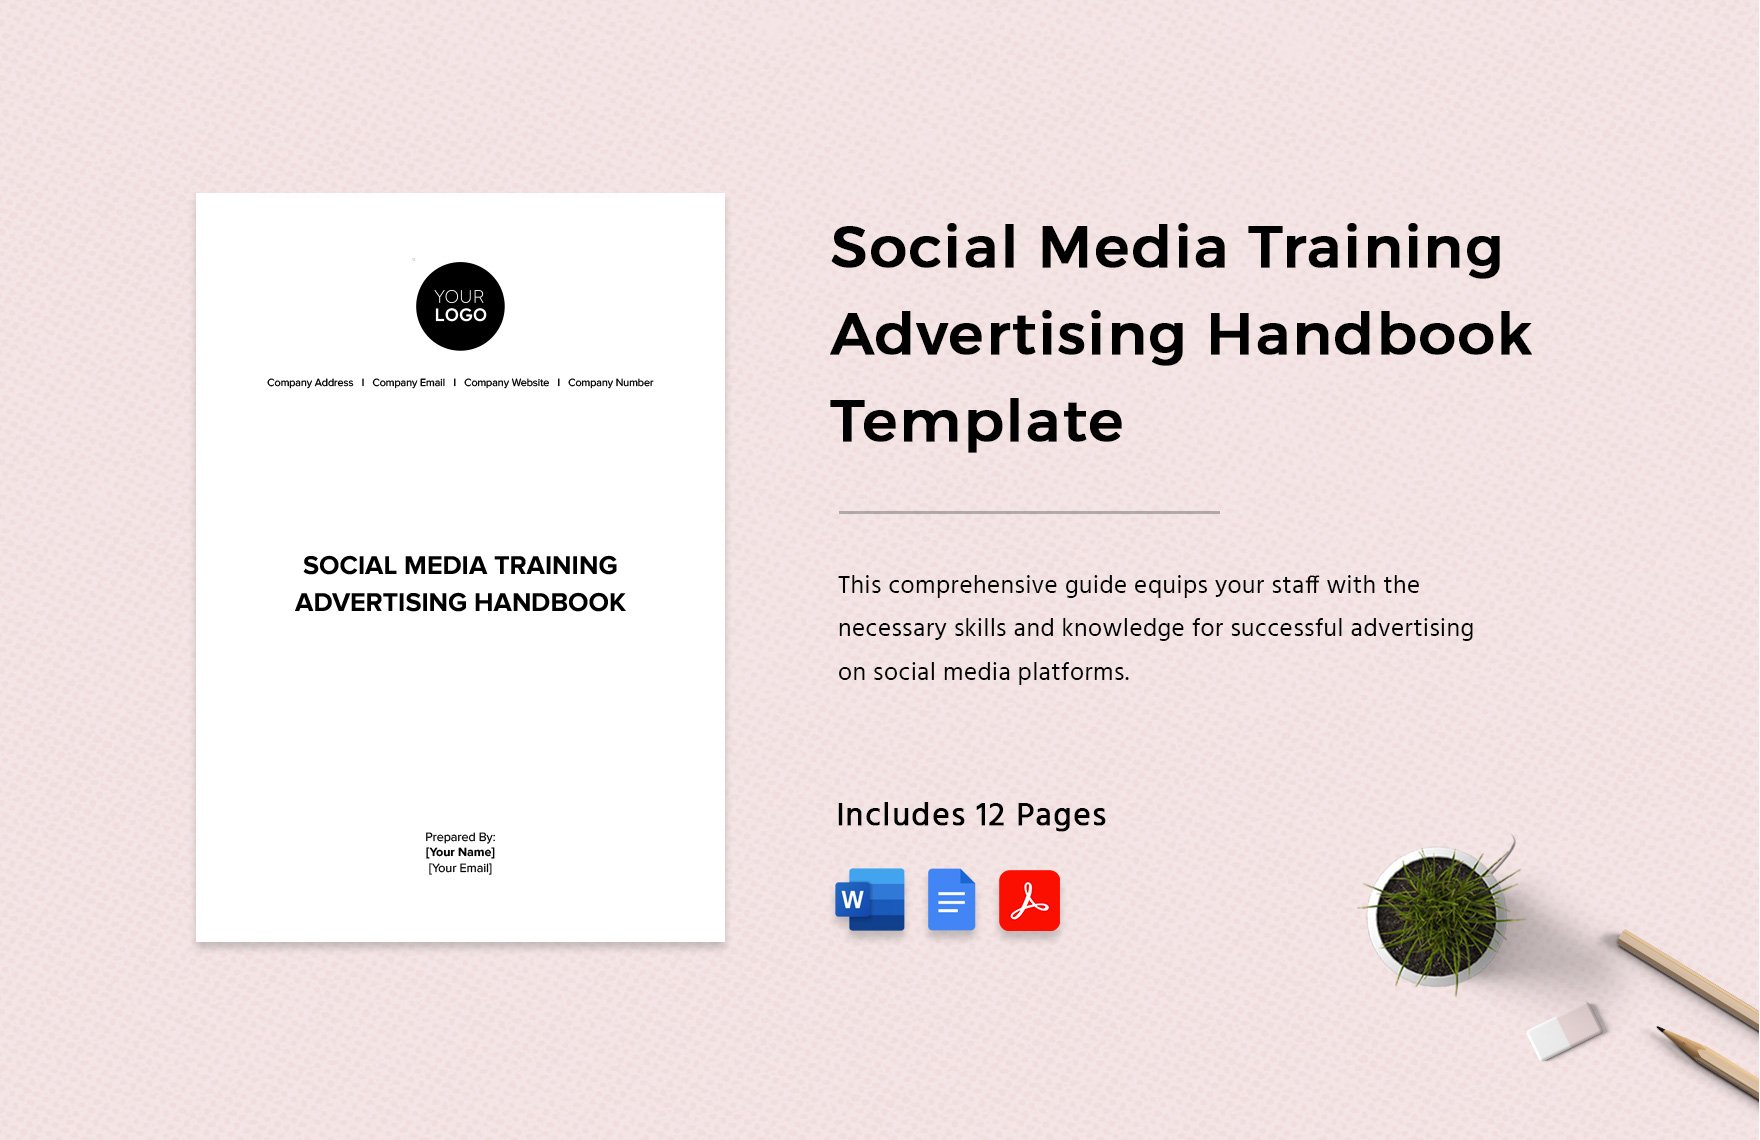 Social Media Training Advertising Handbook Template in Word, Google Docs, PDF